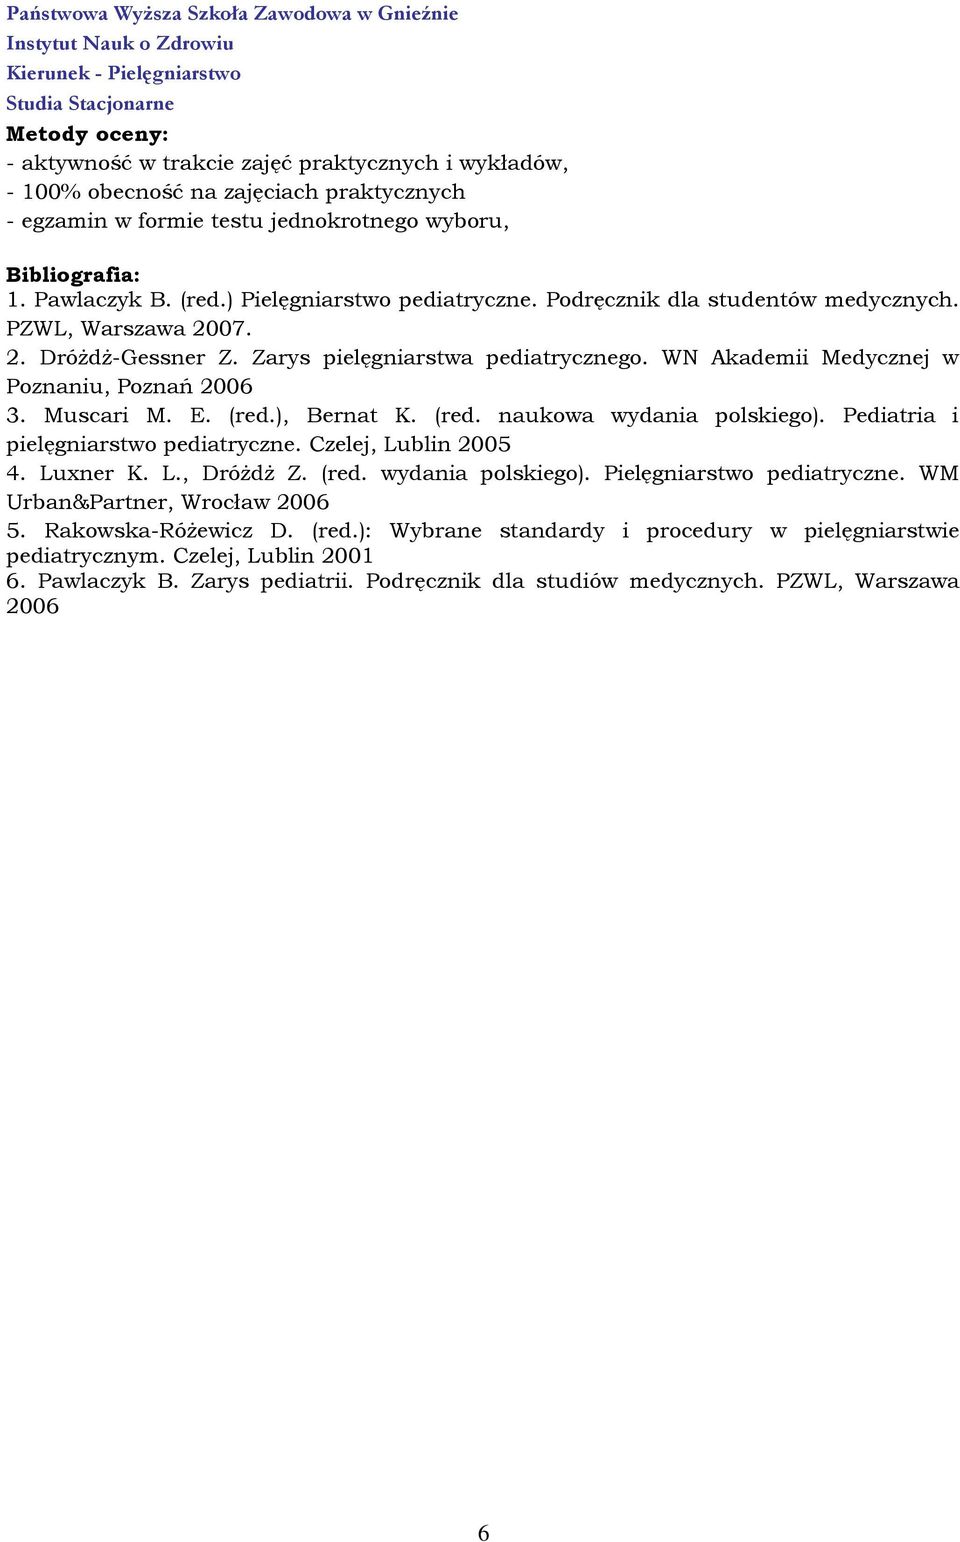 Muscari M. E. (red.), Bernat K. (red. naukowa wydania polskiego). Pediatria i pielęgniarstwo pediatryczne. Czelej, Lublin 2005 4. Luxner K. L., Dróżdż Z. (red. wydania polskiego). Pielęgniarstwo pediatryczne.